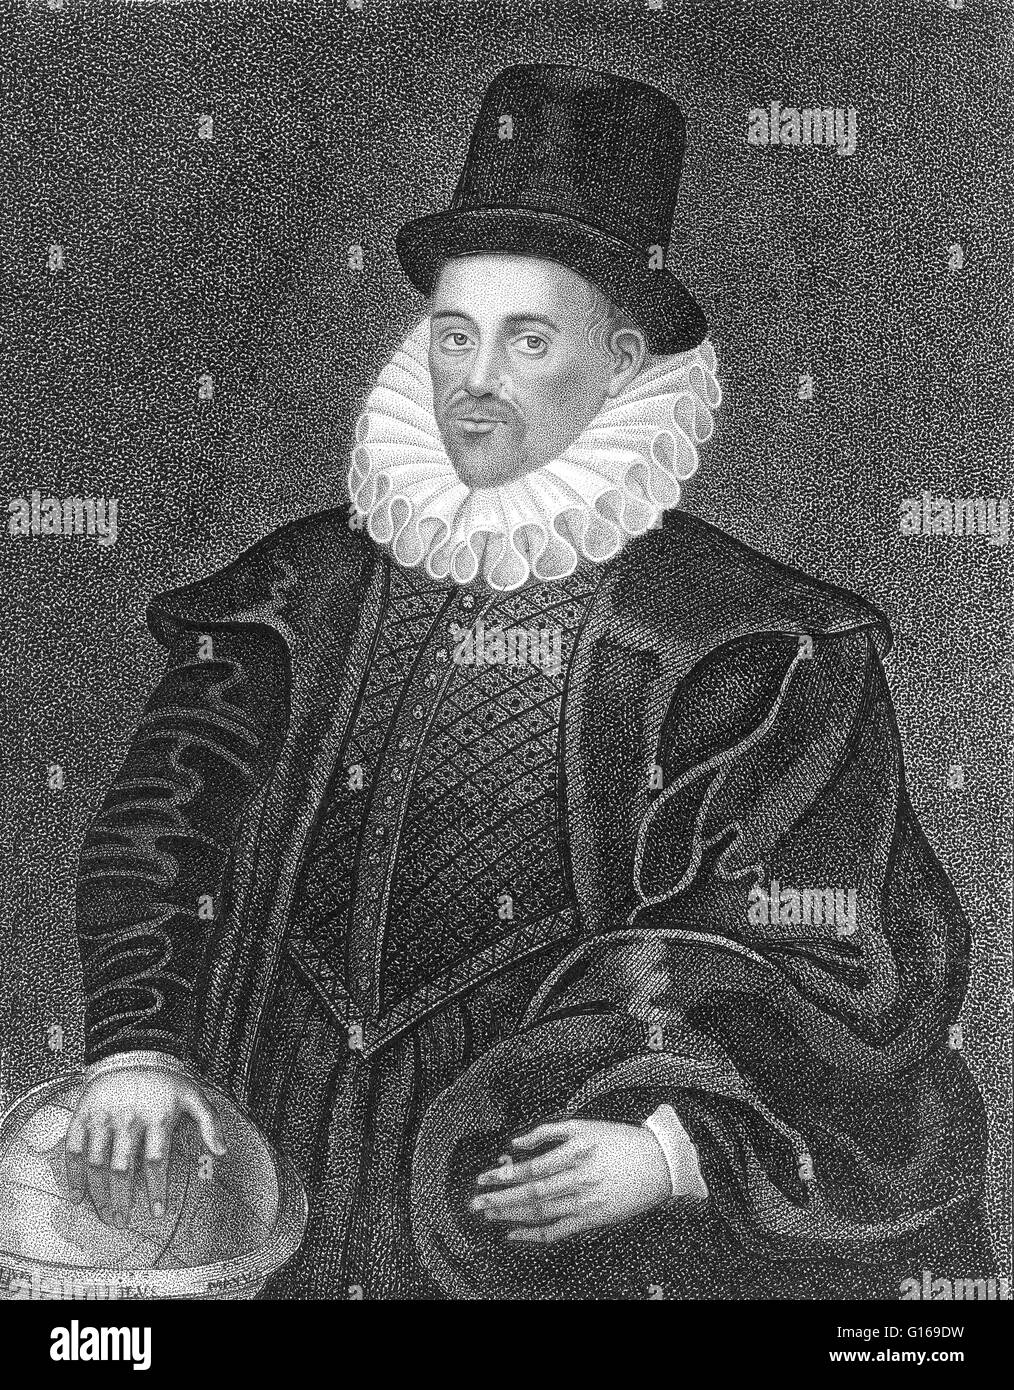 William Gilbert (24 de mayo de 1544 - 30 de noviembre de 1603) fue un  médico inglés, físico y filósofo natural. Él es considerado por algunos  como el padre de la ingeniería